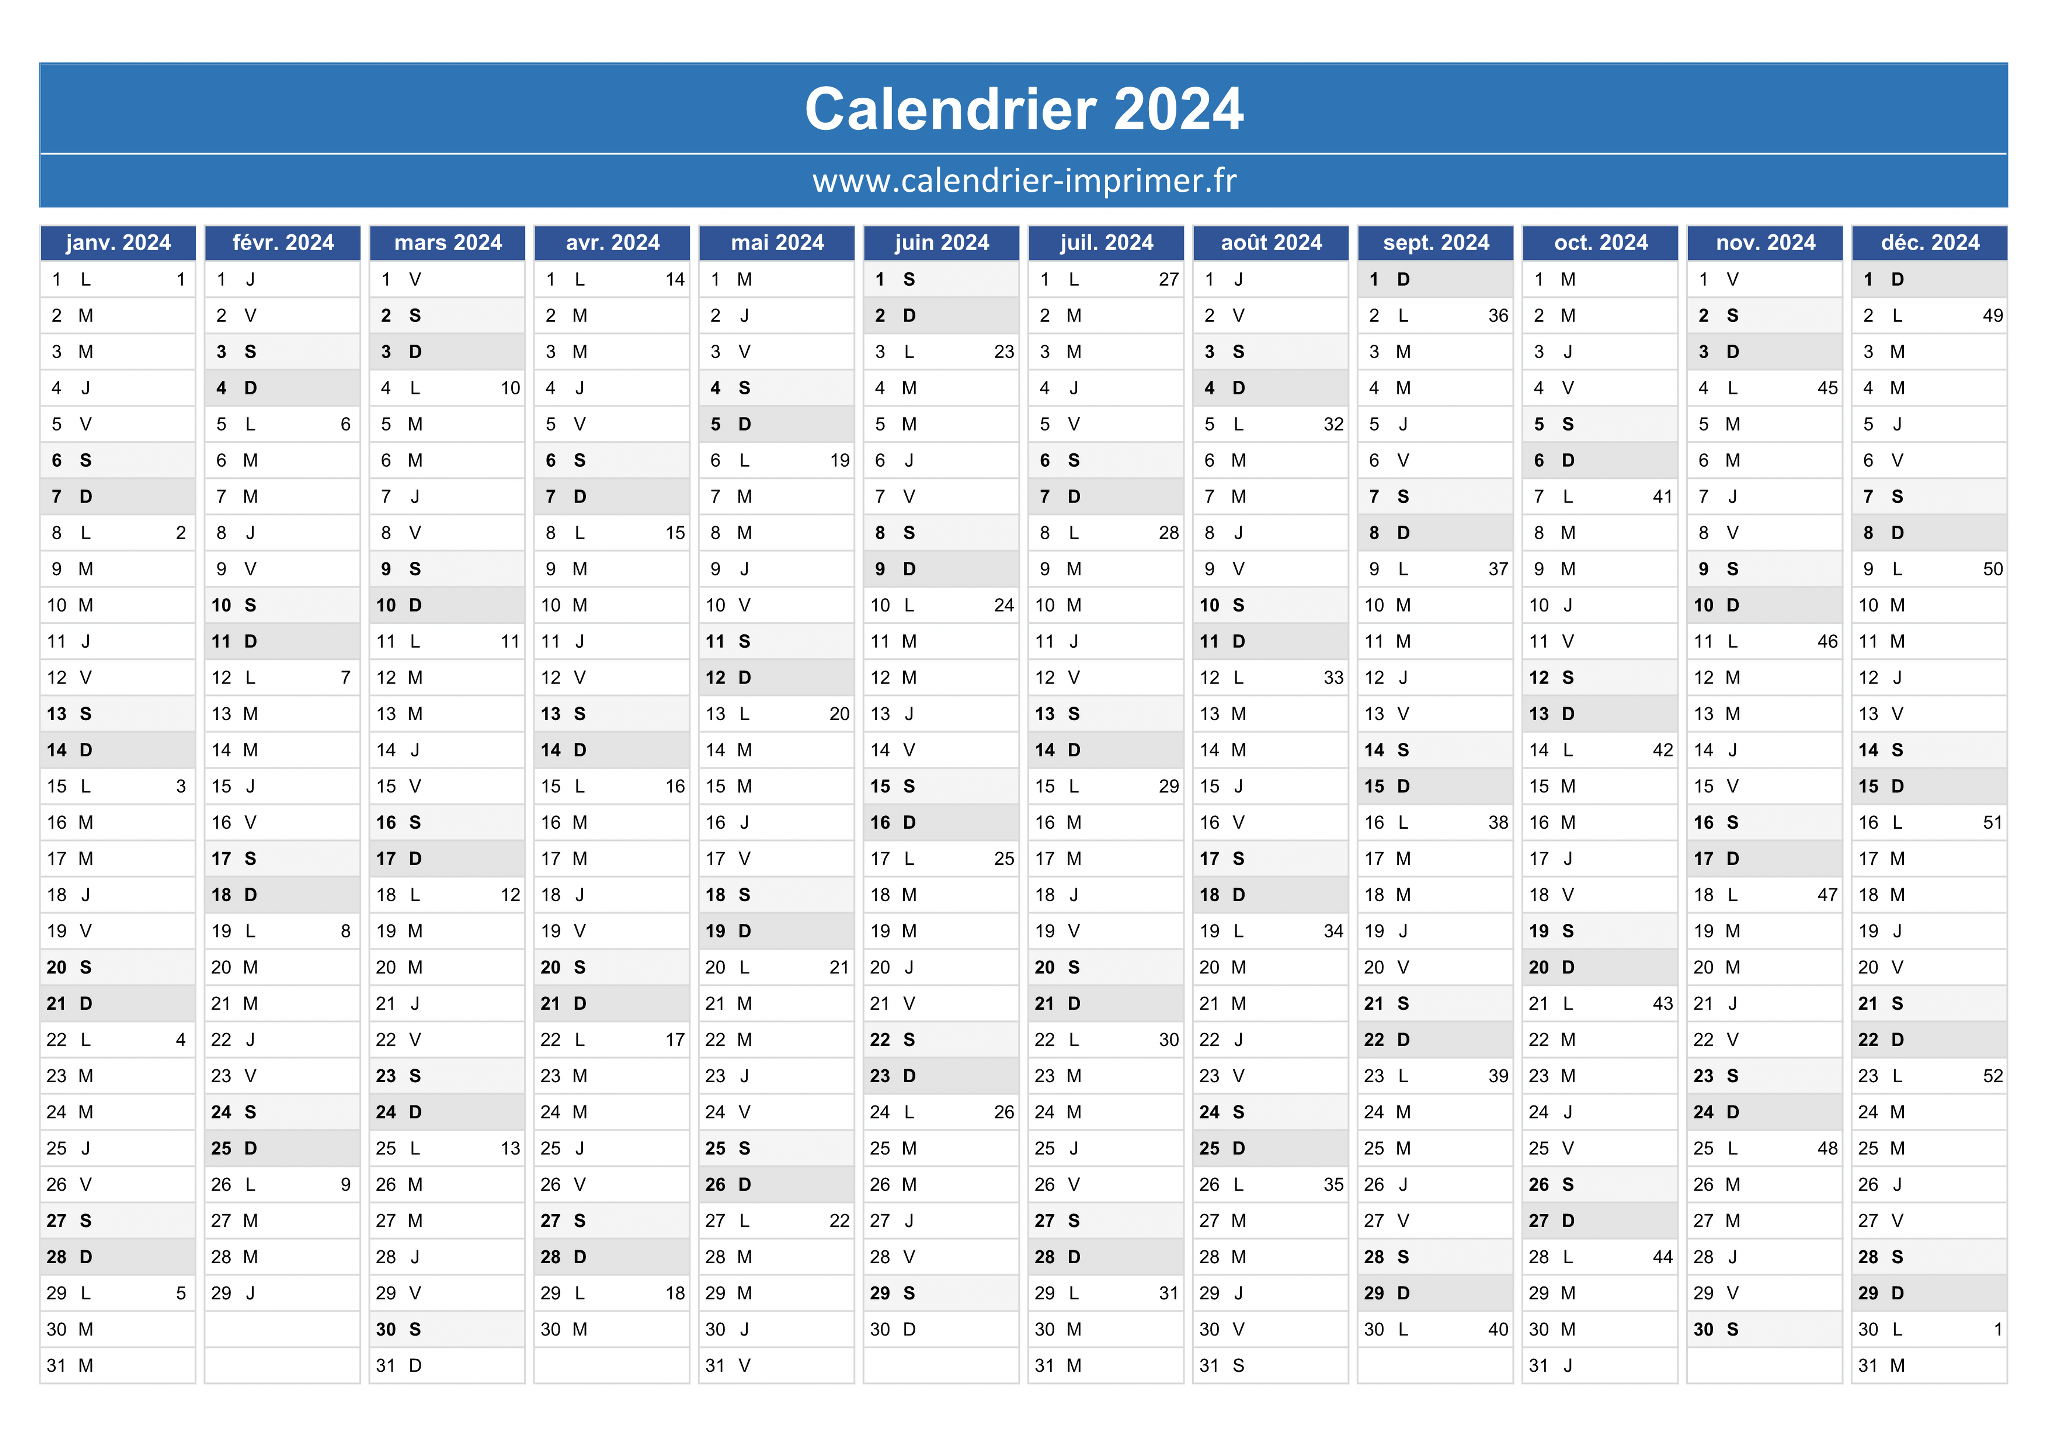 Semaine Paire - Semaine impaire : calendrier 2024-2025